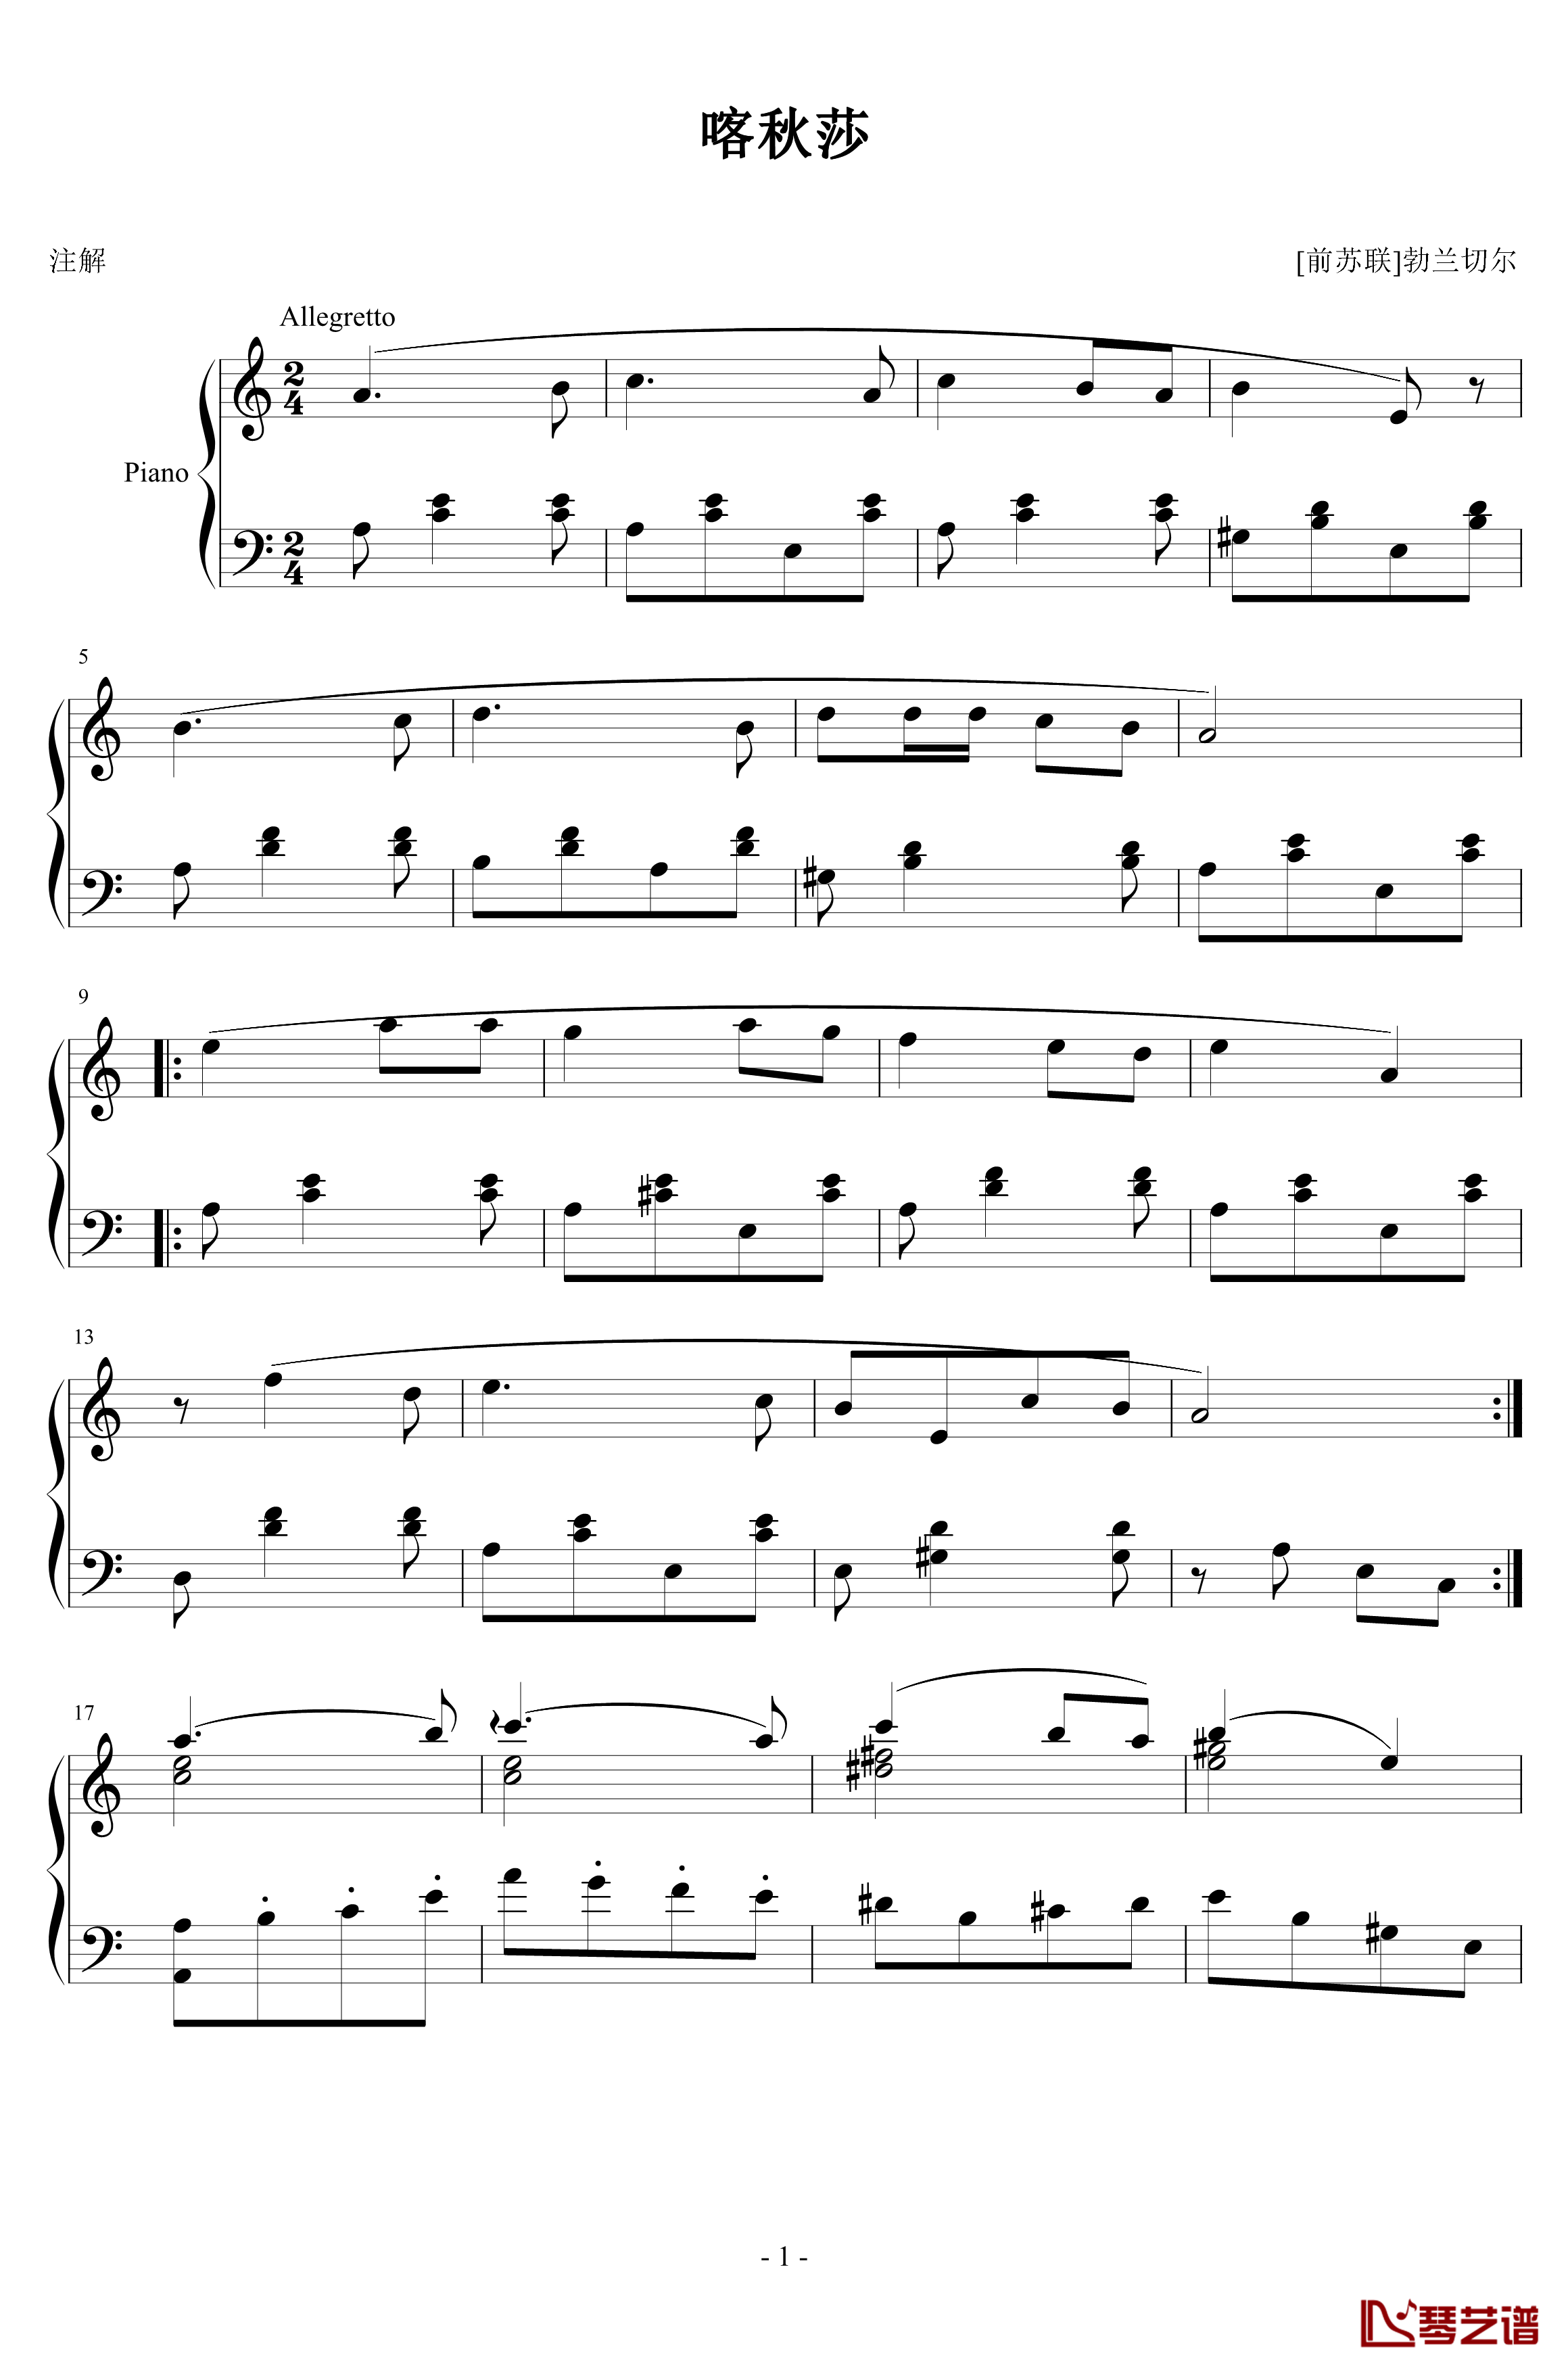 喀秋莎钢琴谱-钢琴独奏版-苏联名歌1